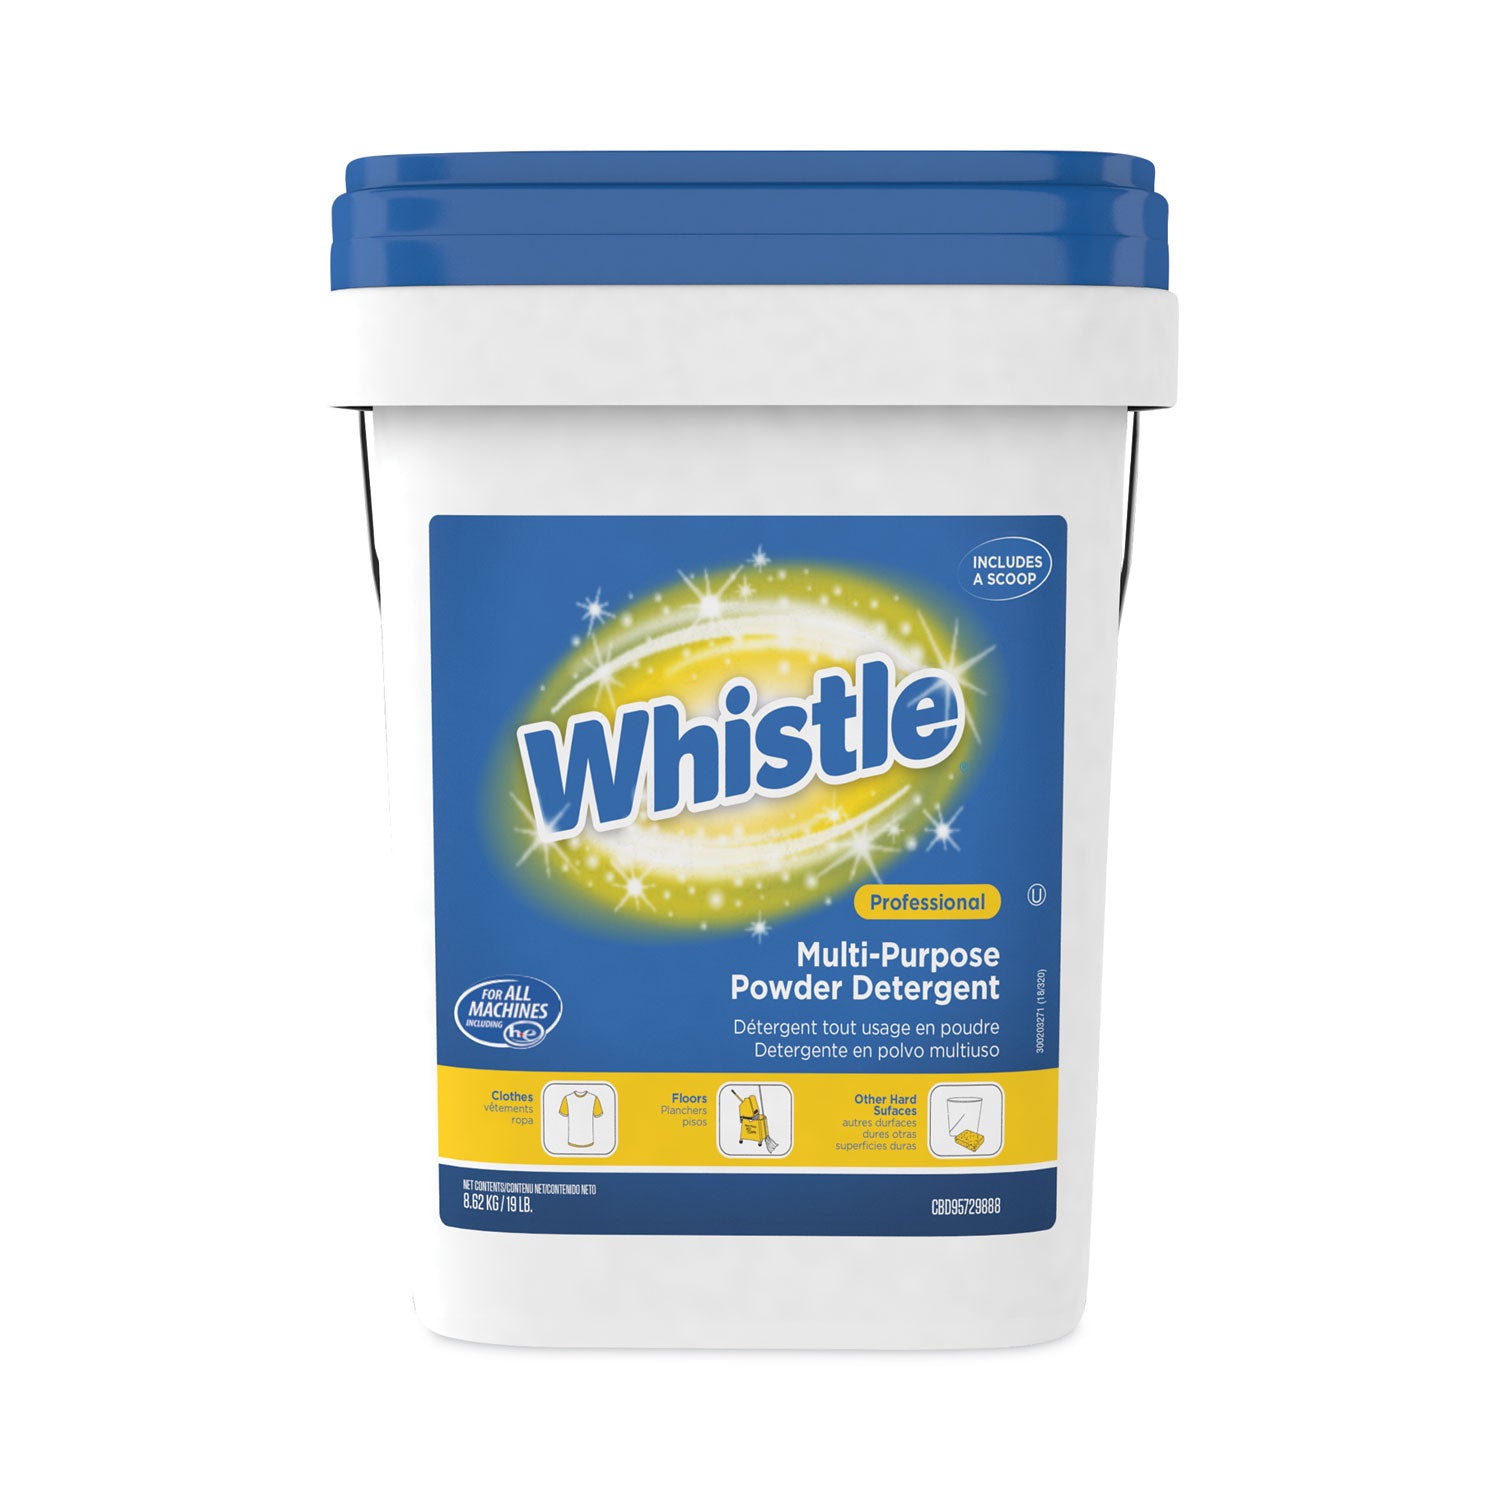 Whistle Multi-Purpose Powder Detergent， Citrus， 19 lb Pail by Diversey DVOCBD95729888